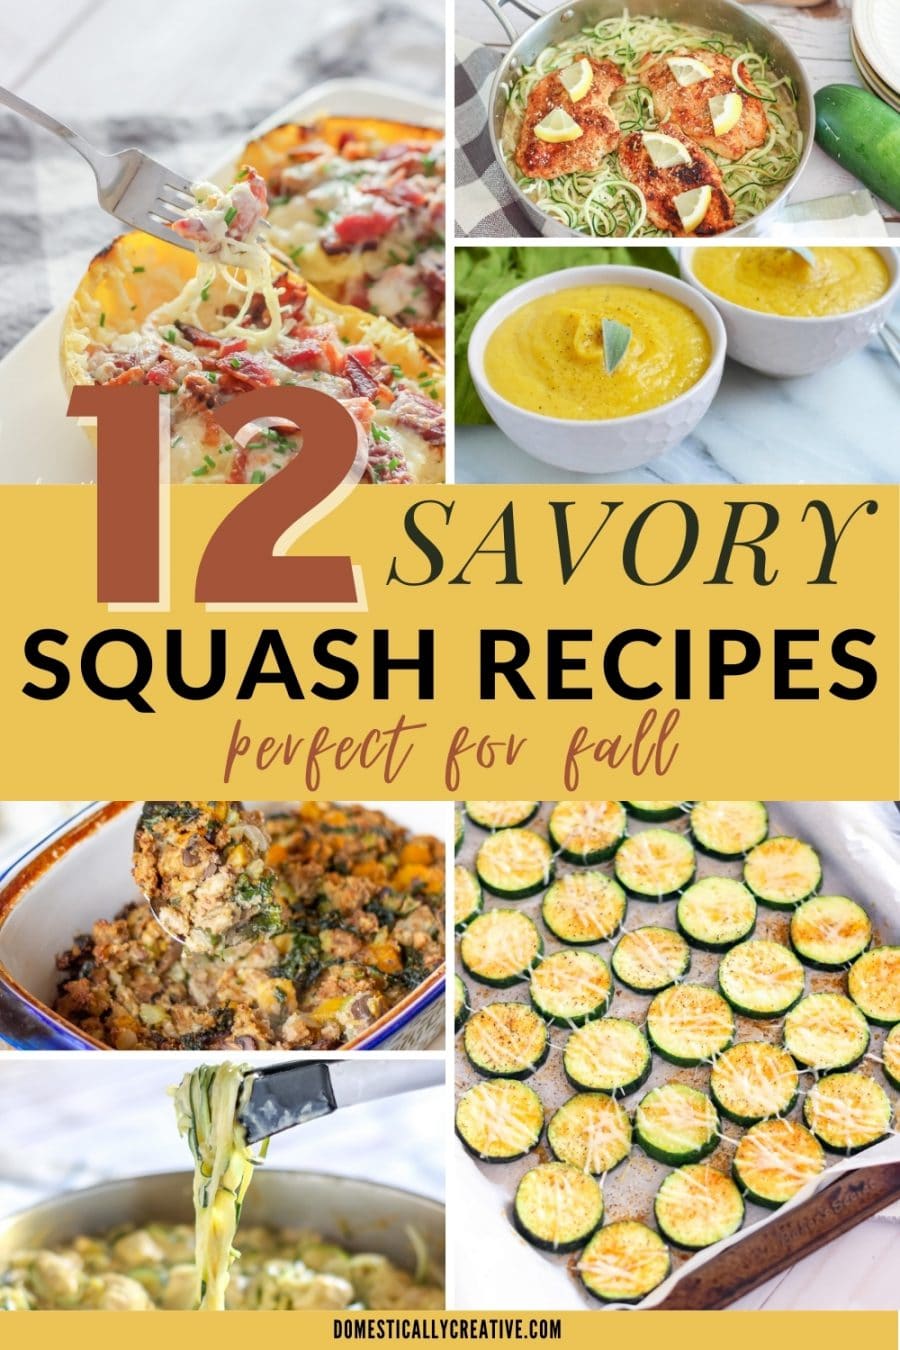 Savory Fall Squash Recipes